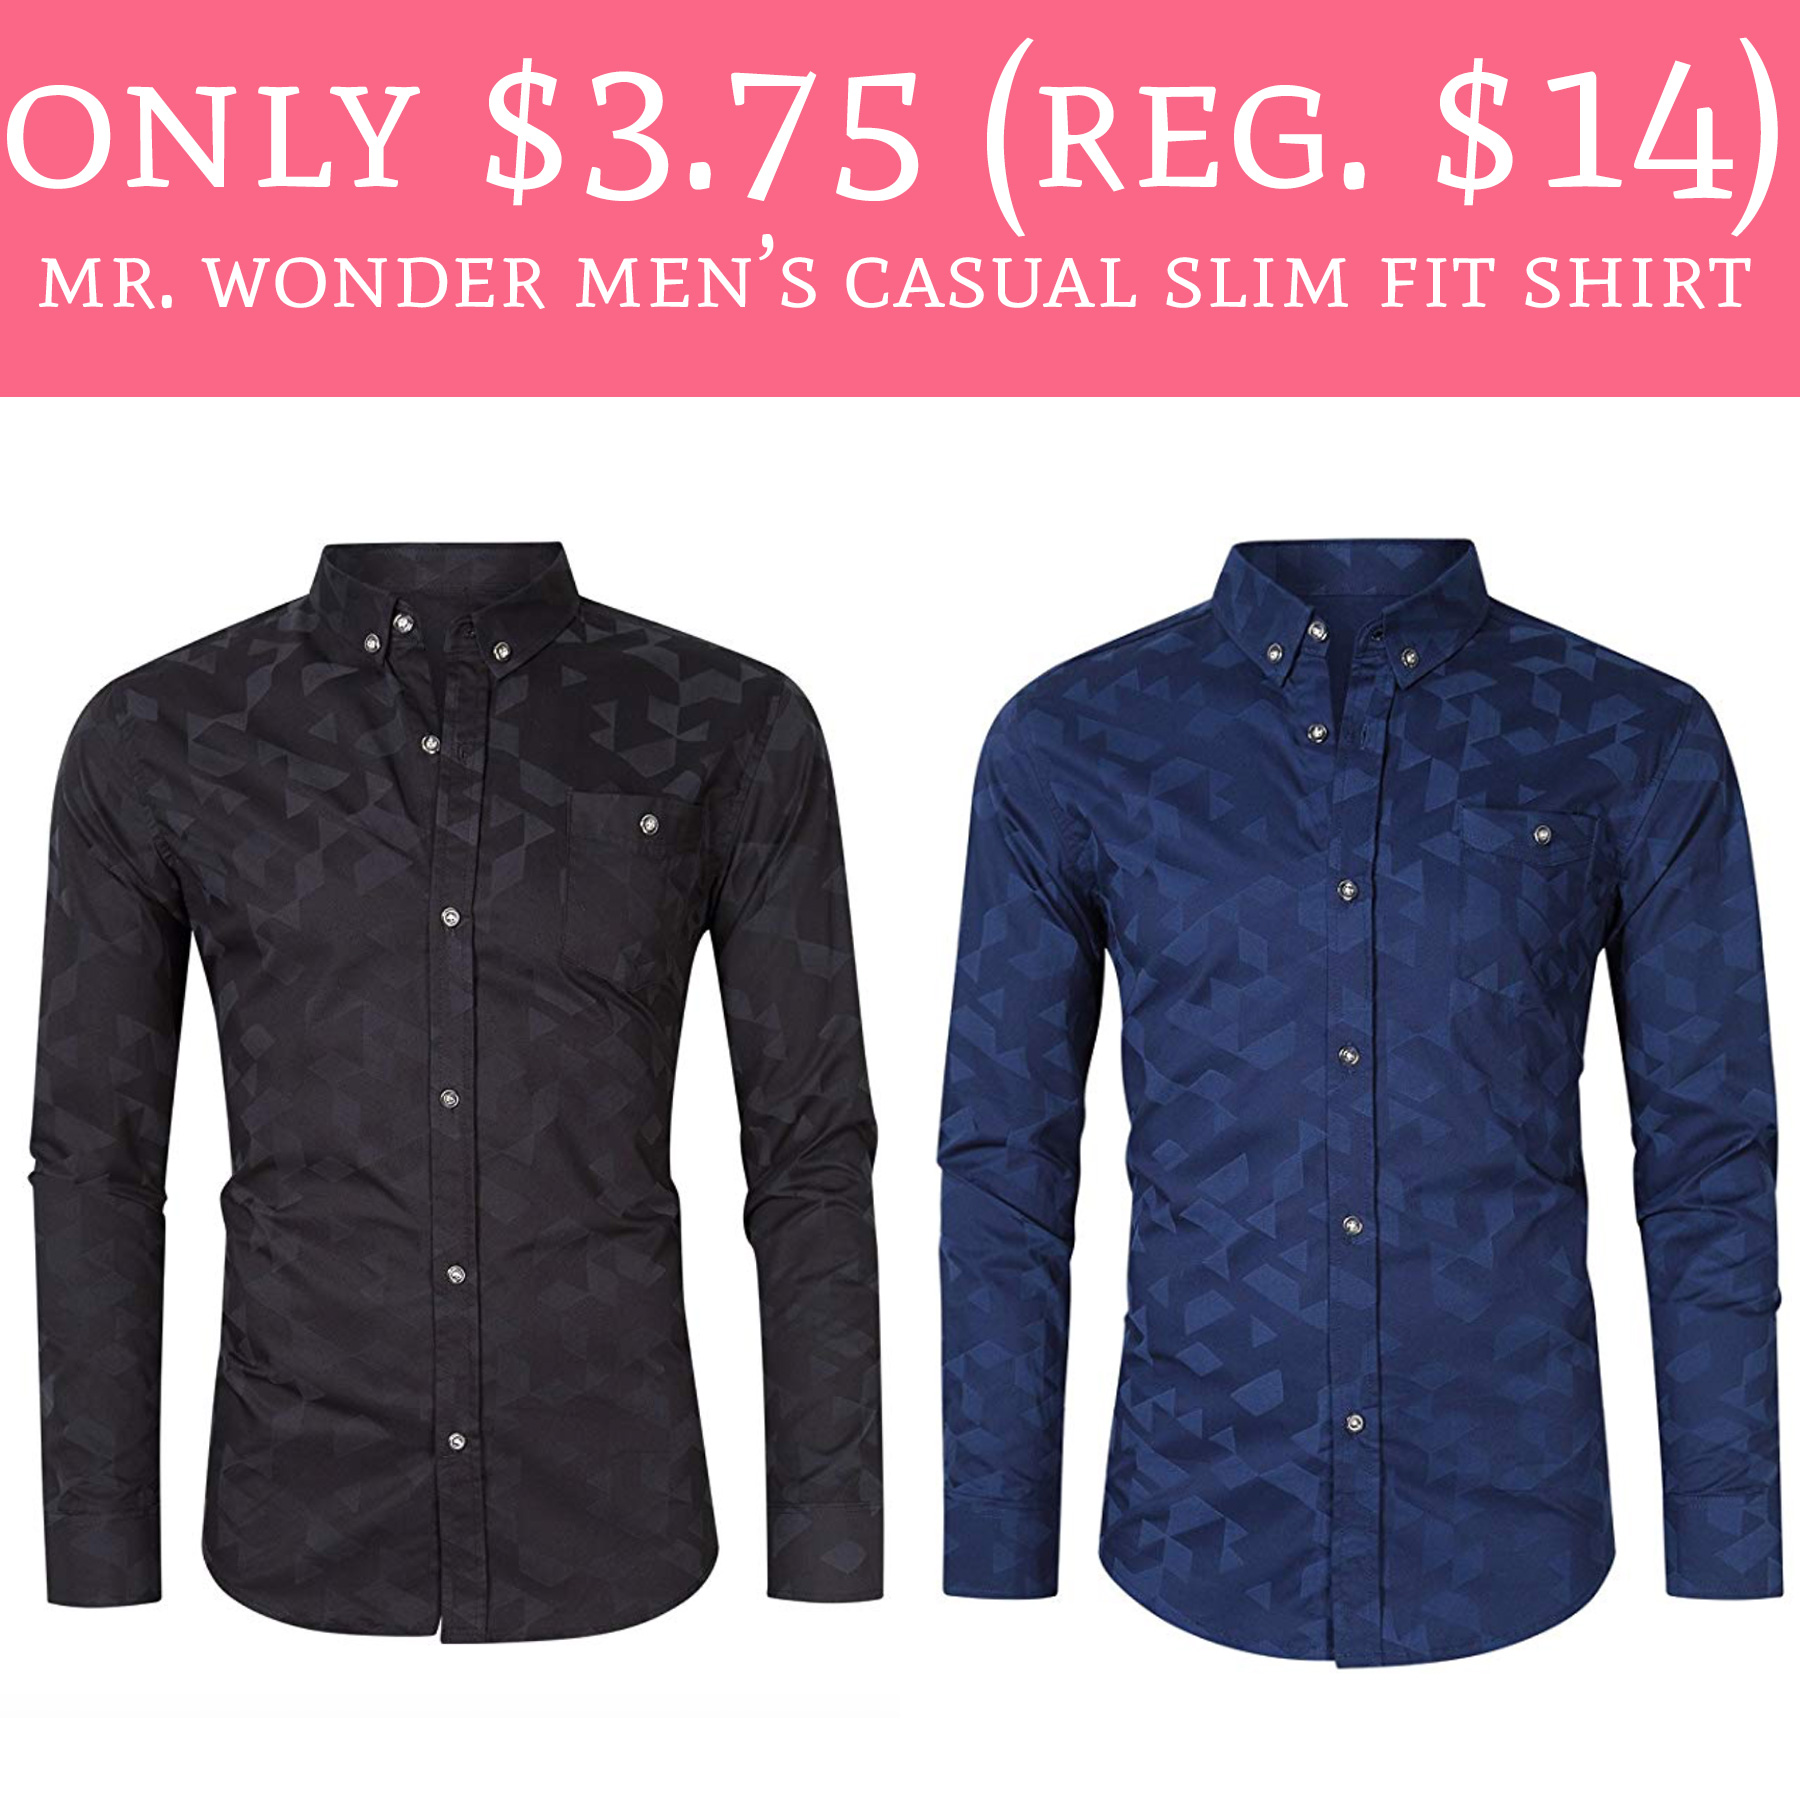 mr-wonder-men’s-casual-slim-fit-shirt